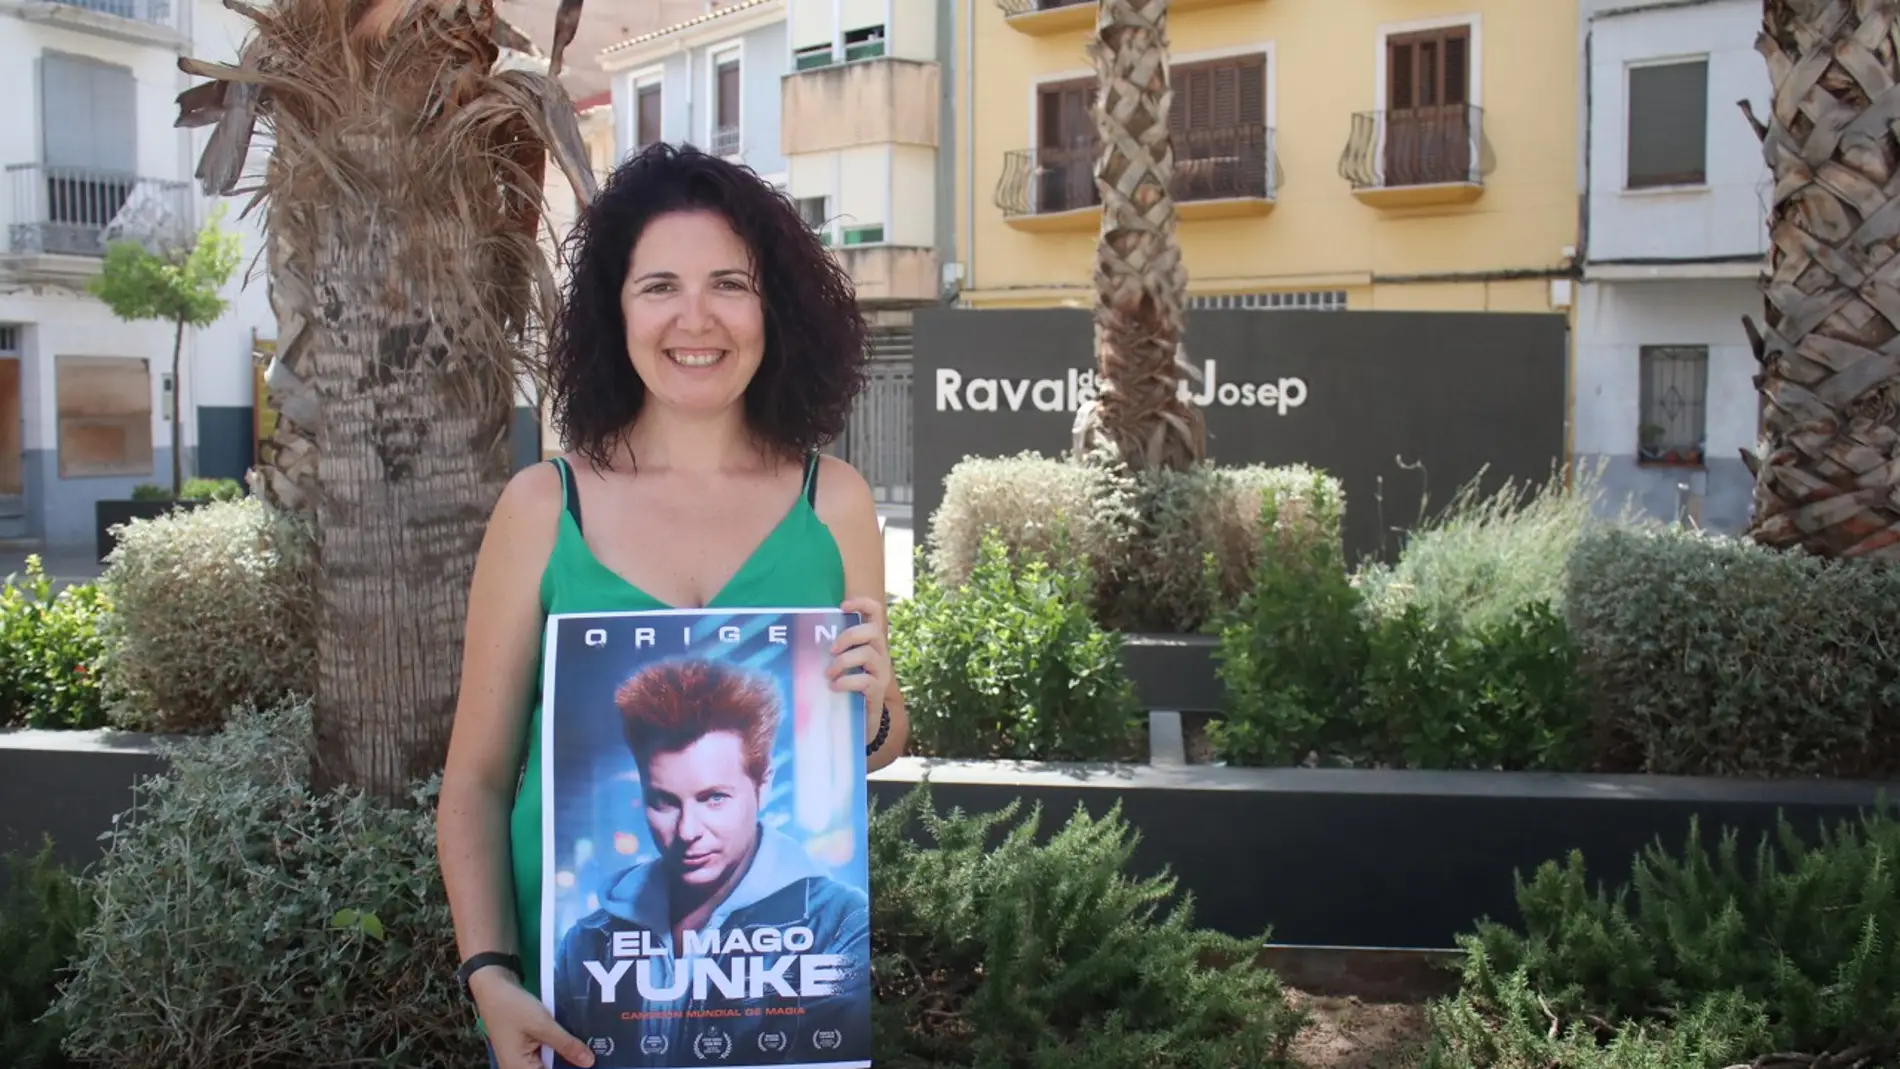 La concejala de Cultura, María Prades ha presentado el espectácilo Origen del mago Yunke